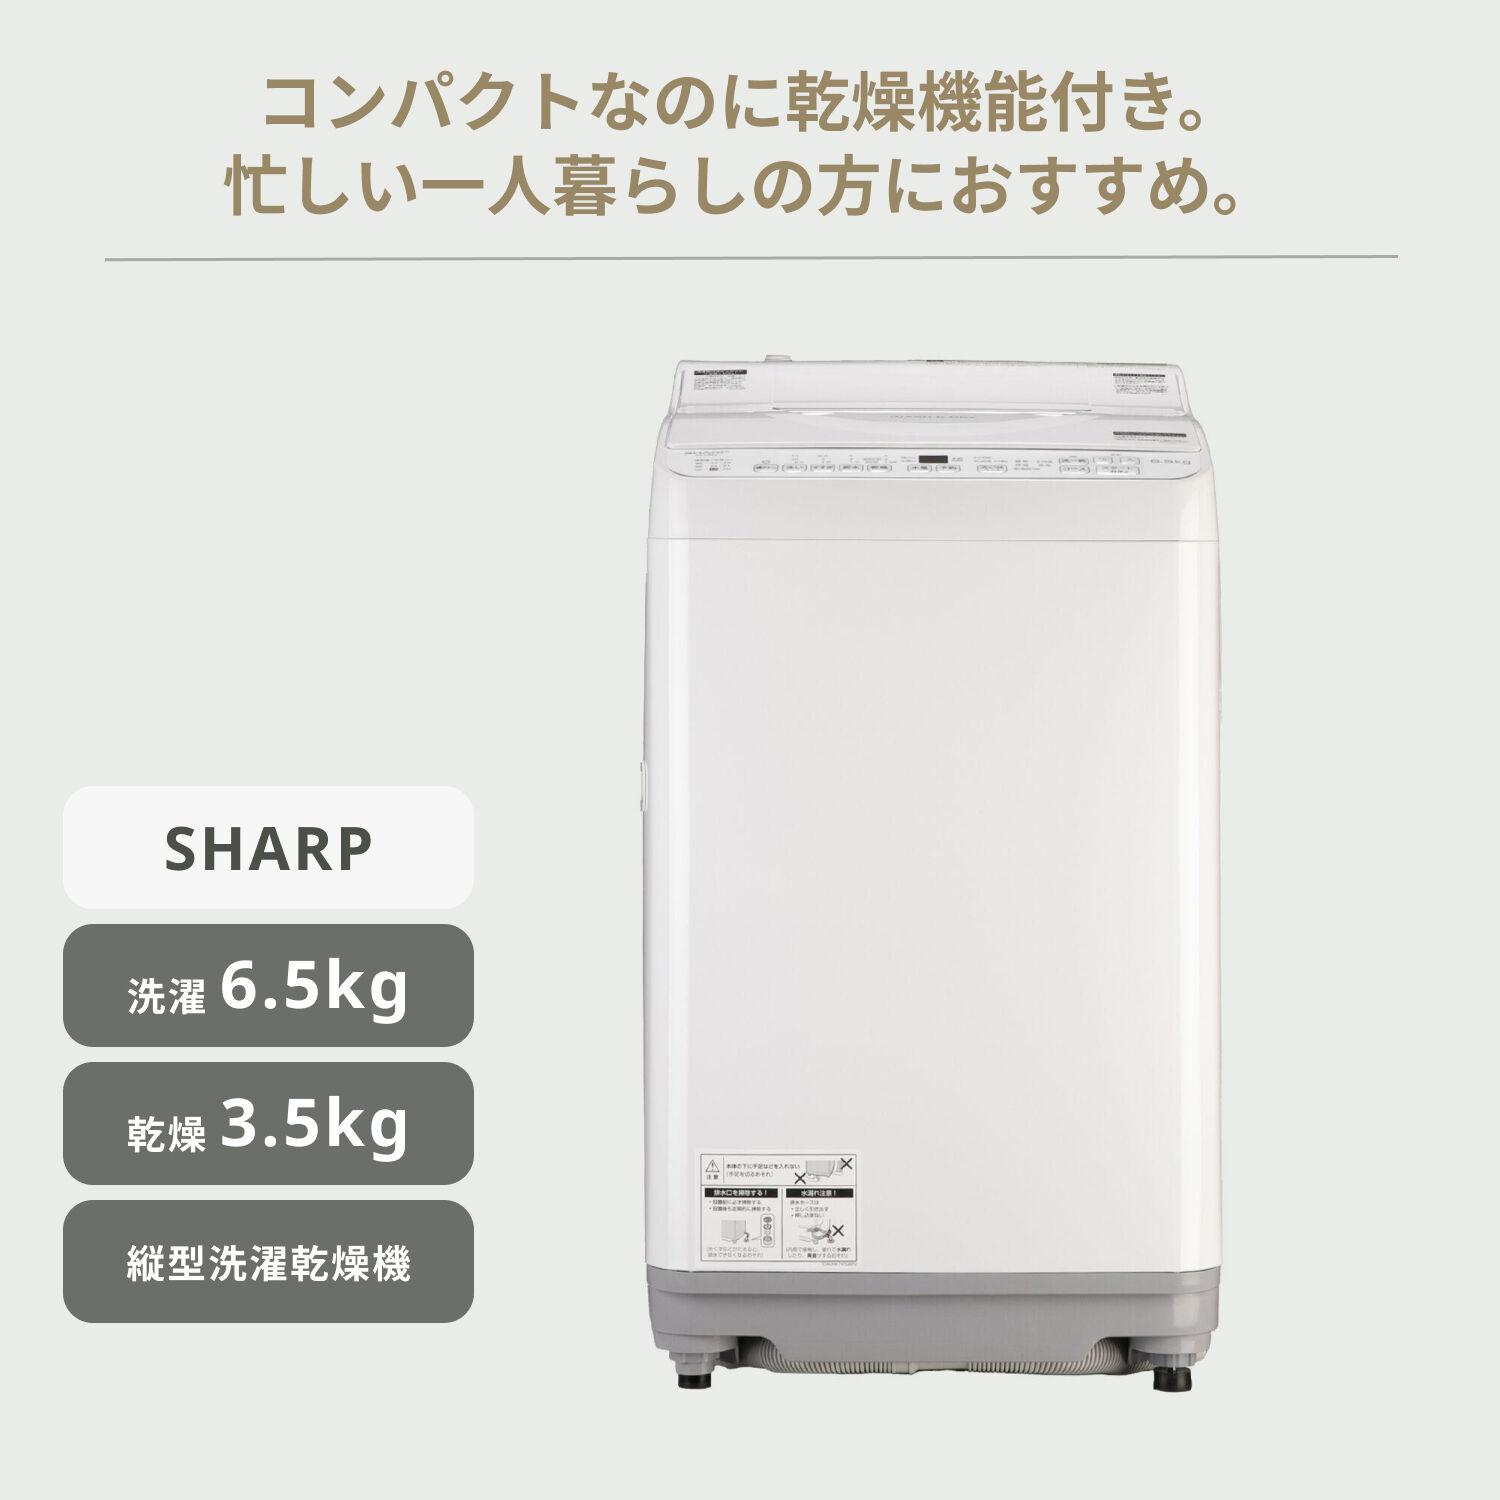 770 洗濯機 SHARP 乾燥機能付き 一人暮らし向け 小型 - vertriebs